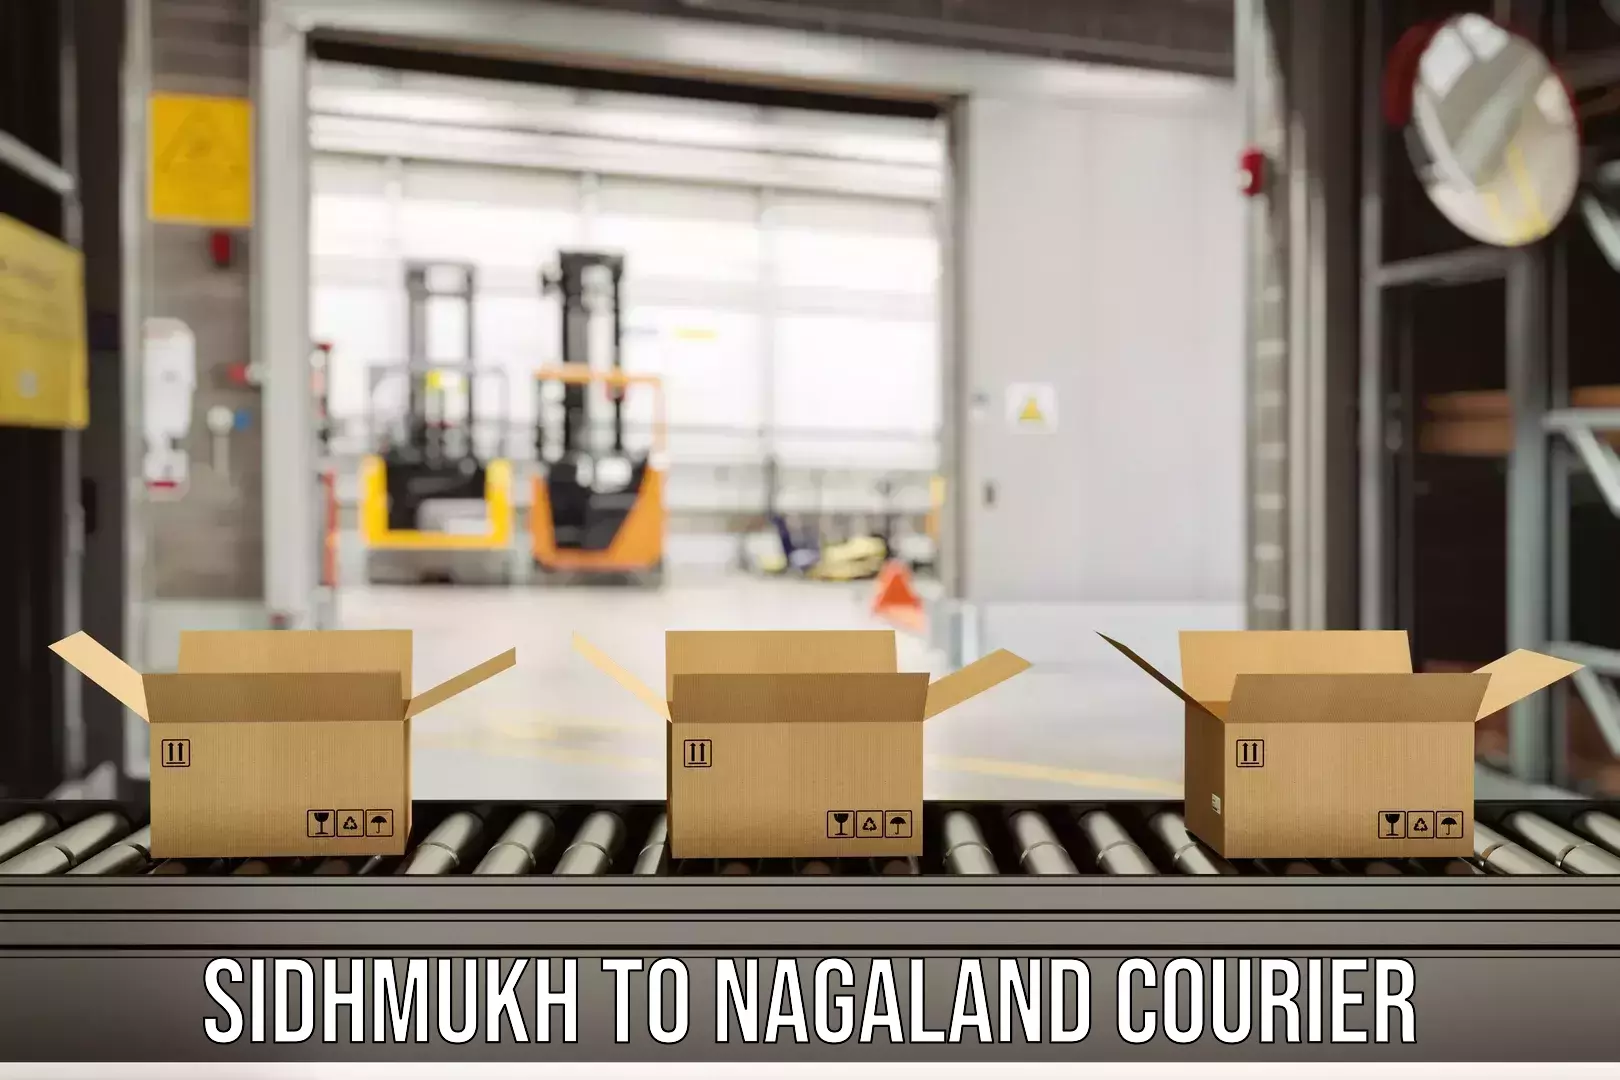 Express mail service Sidhmukh to Nagaland